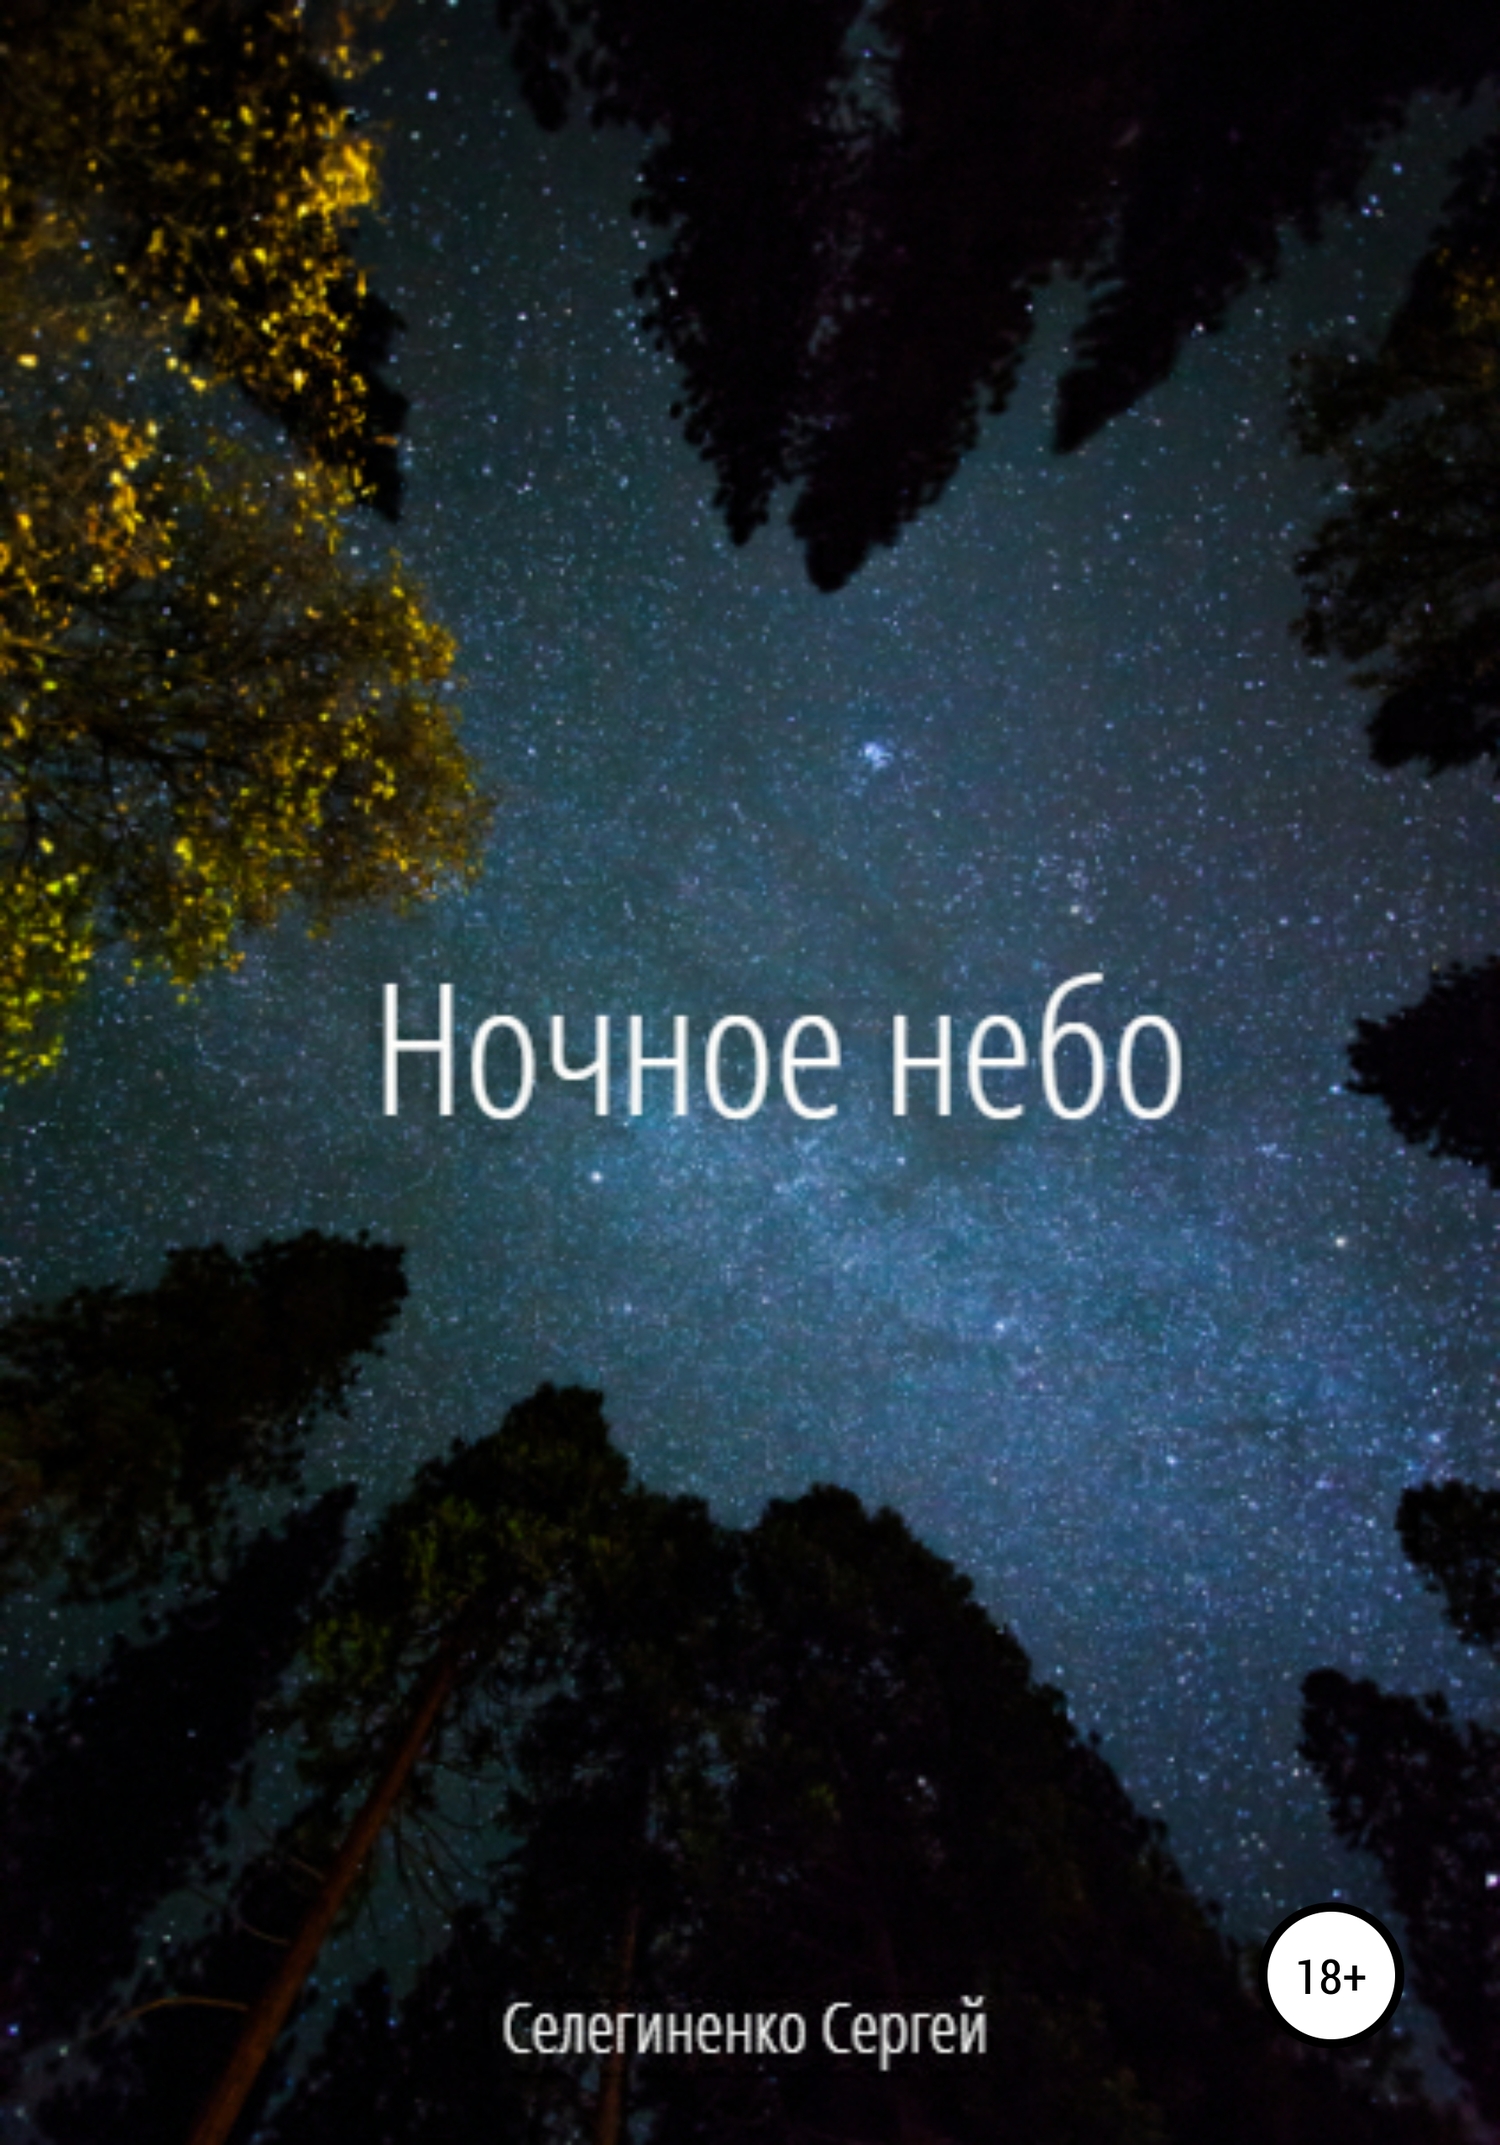 Ночное небо - Сергей Александрович Селегиненко